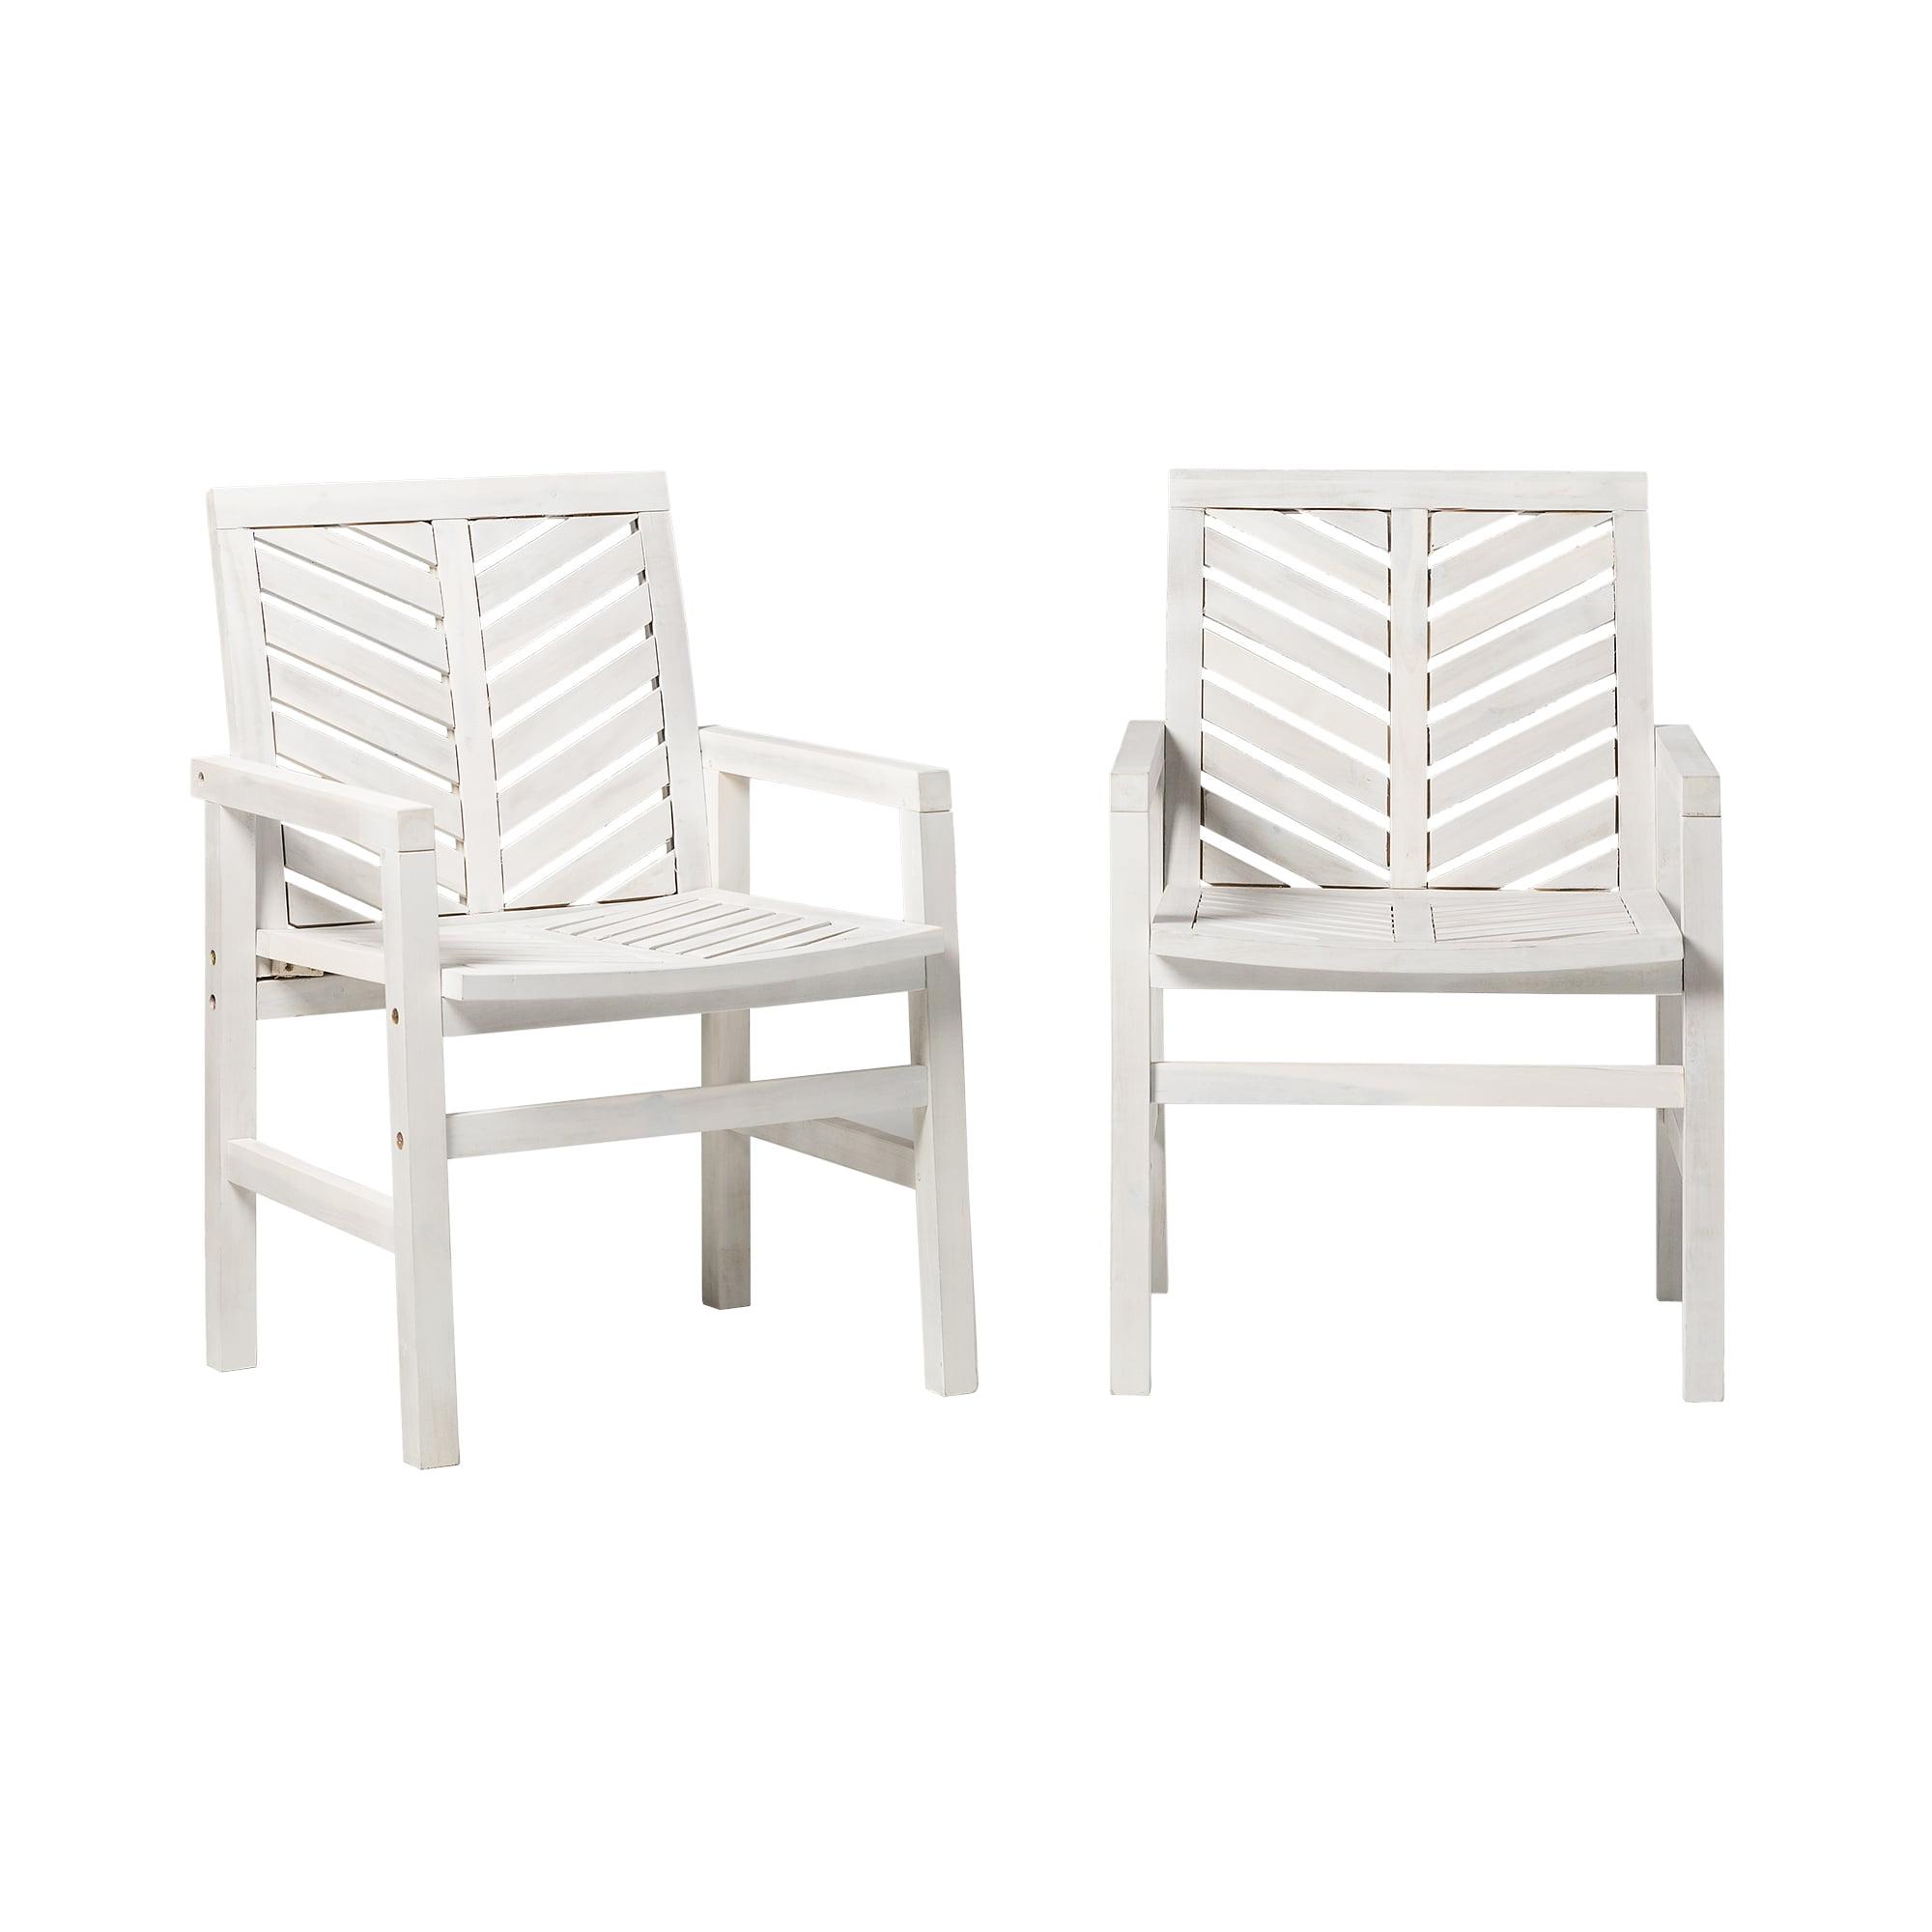 White Wash Acacia Wood Chevron Outdoor Patio Chair Set